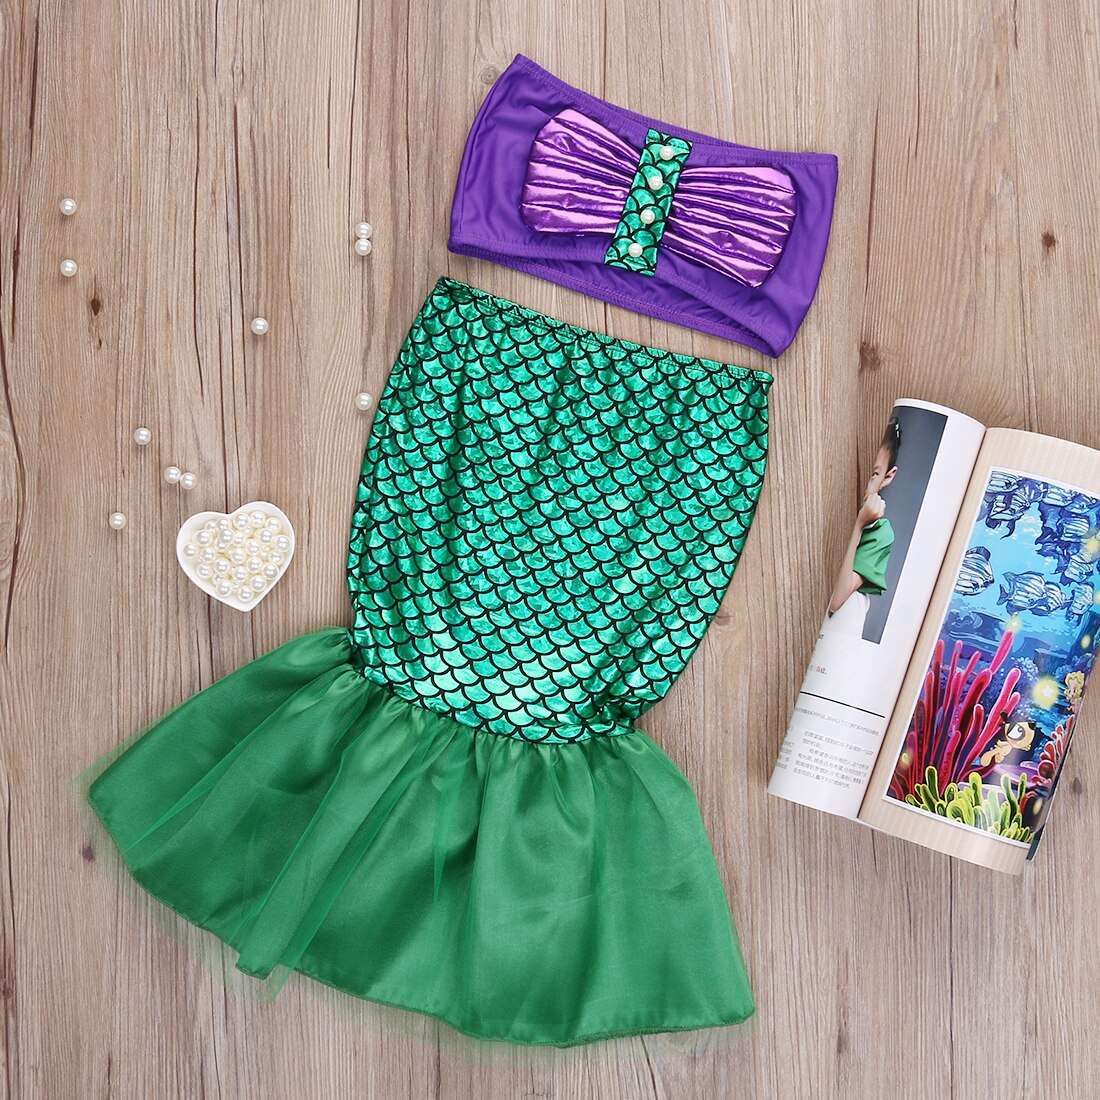 Little Mermaid Fancy Dress Outfit - Fancy Dress from Dear Cece - Just £16.99! Shop now at Dear Cece